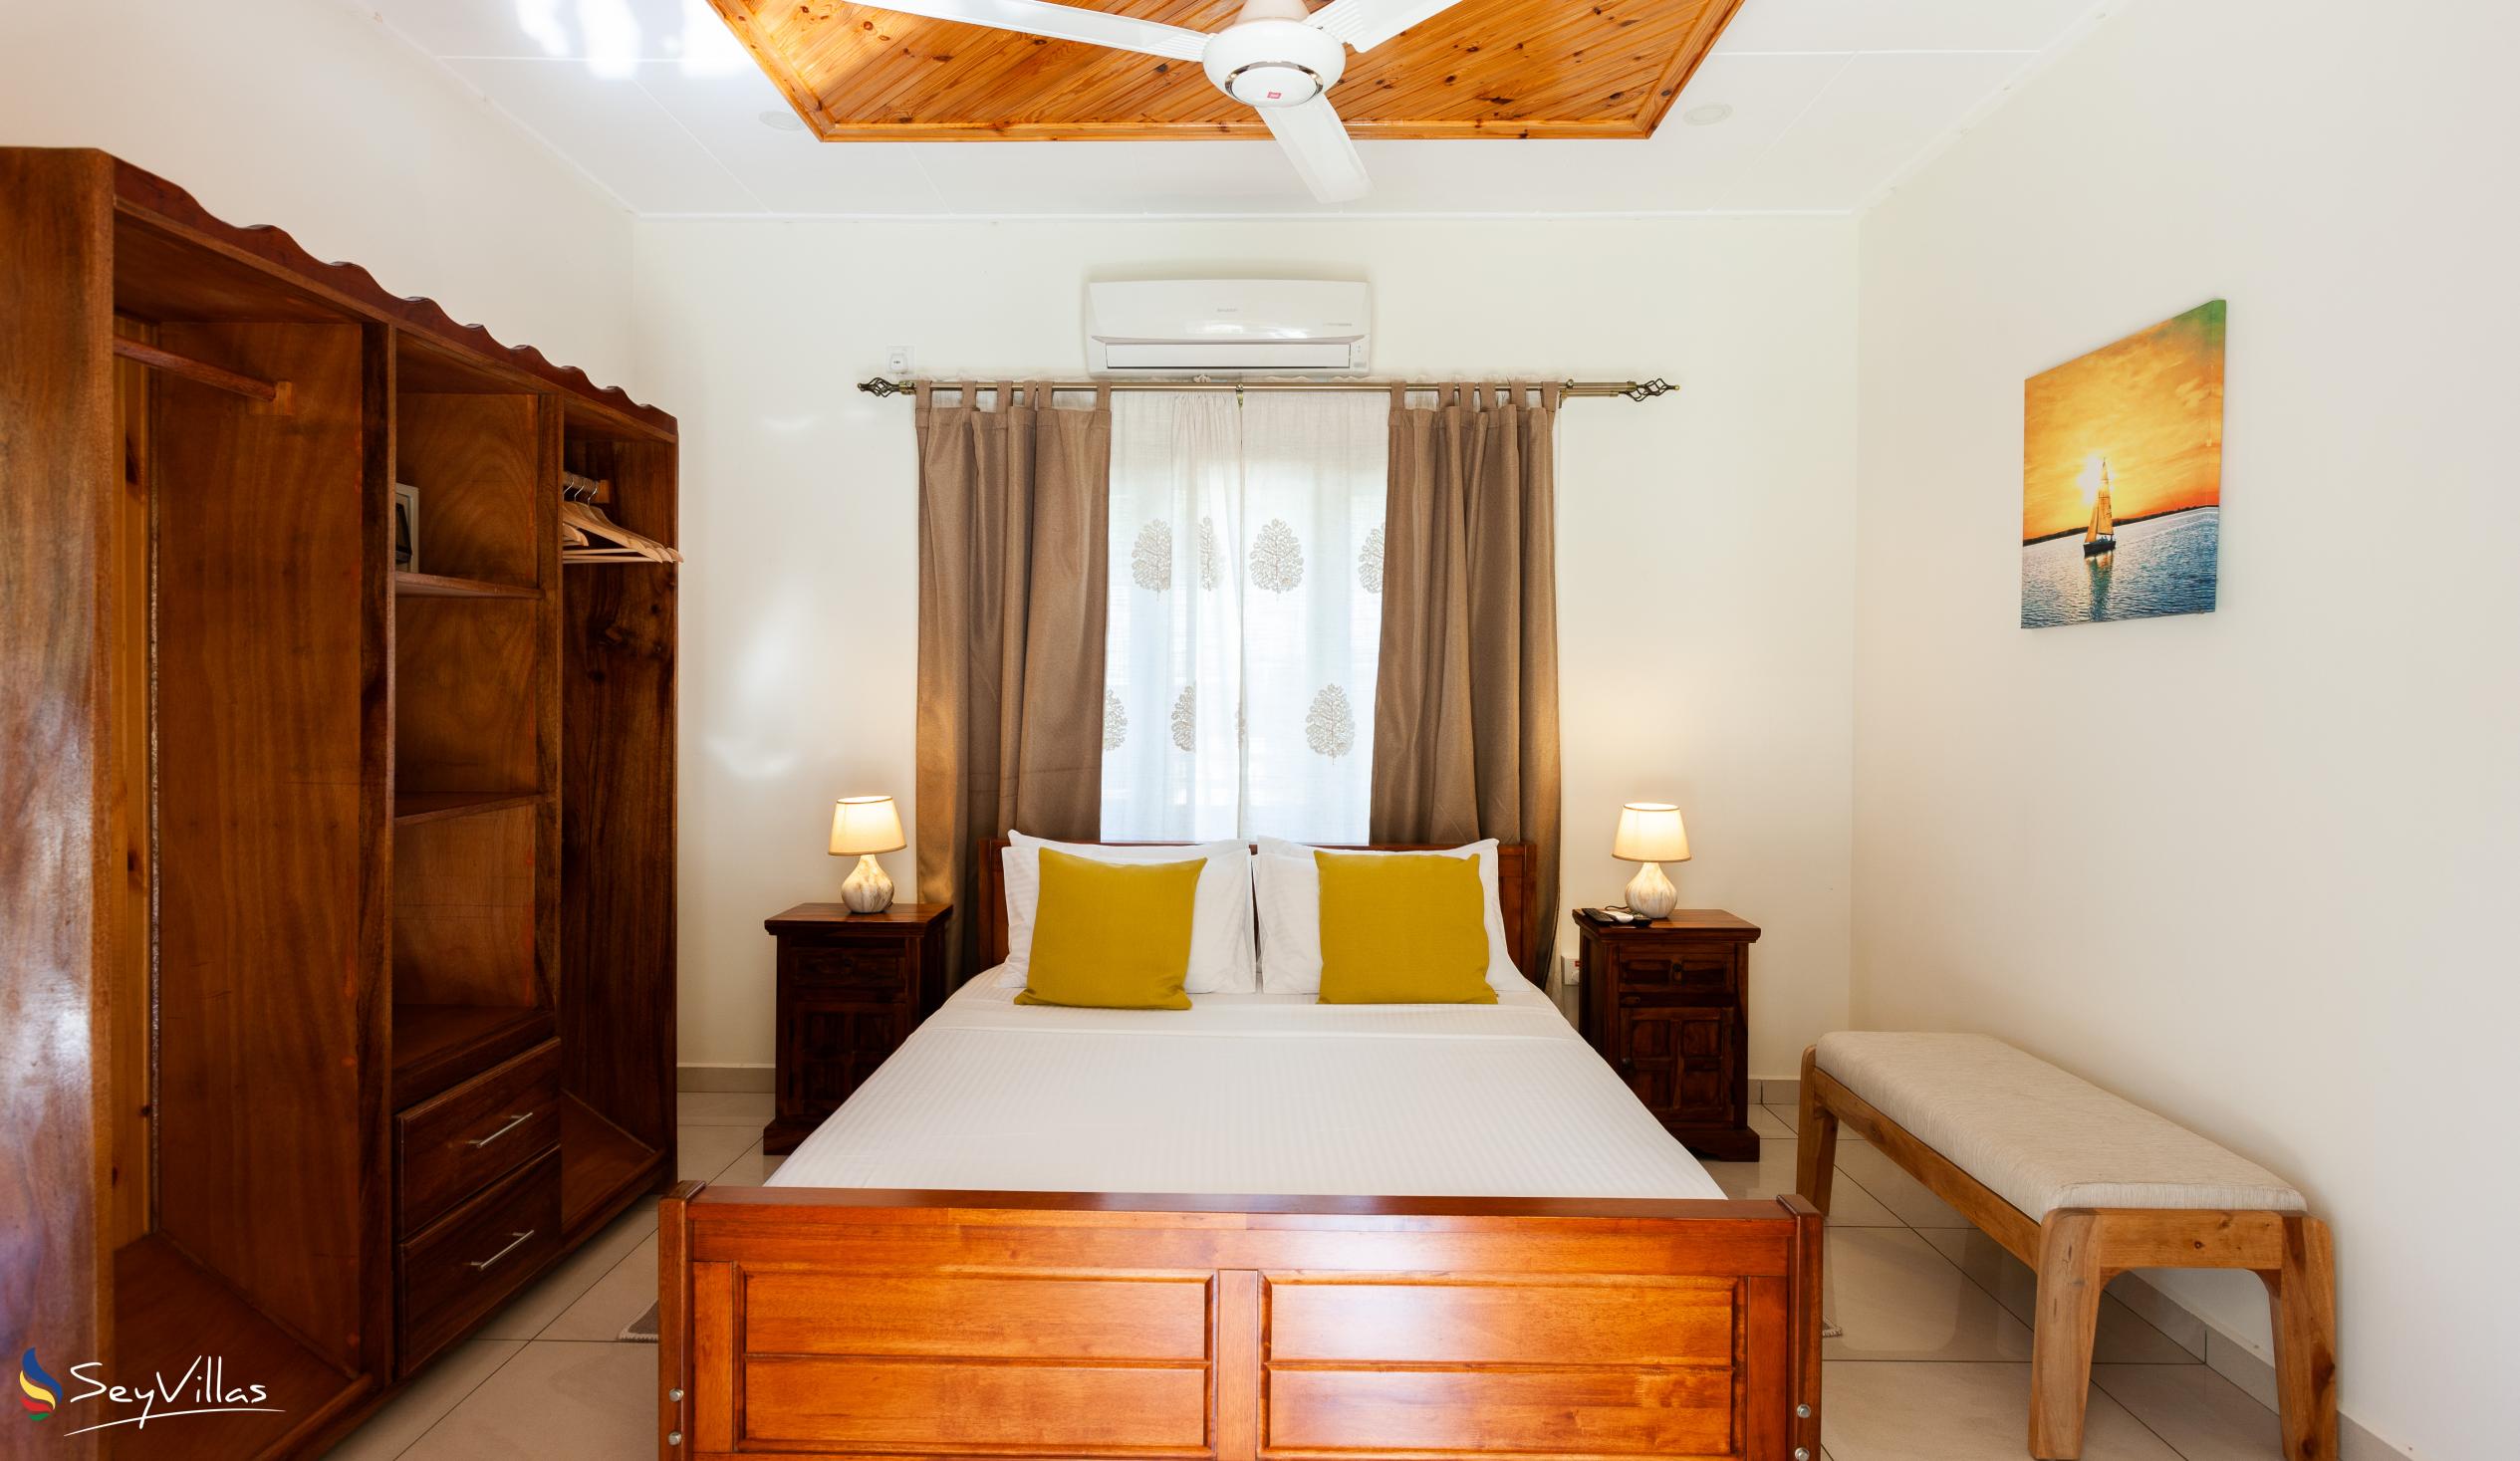 Foto 23: Maison Ed-Elle - Appartamento con 1 camera - La Digue (Seychelles)